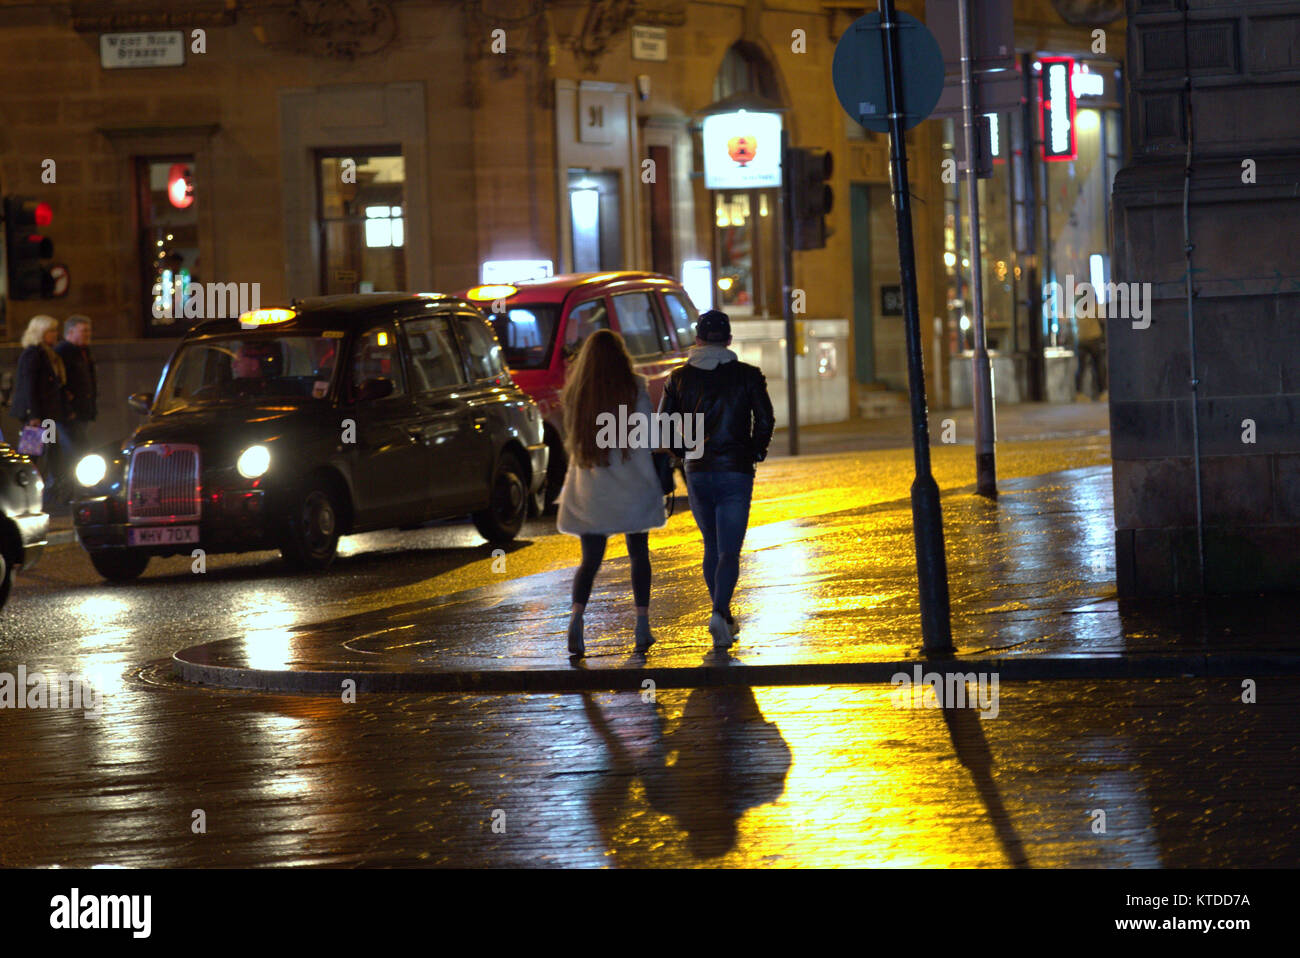 Gritty urban noche húmeda Glasgow street life pareja joven, un chico y una chica caminando en la noche fecha de salida tarde en la noche con taxi Foto de stock